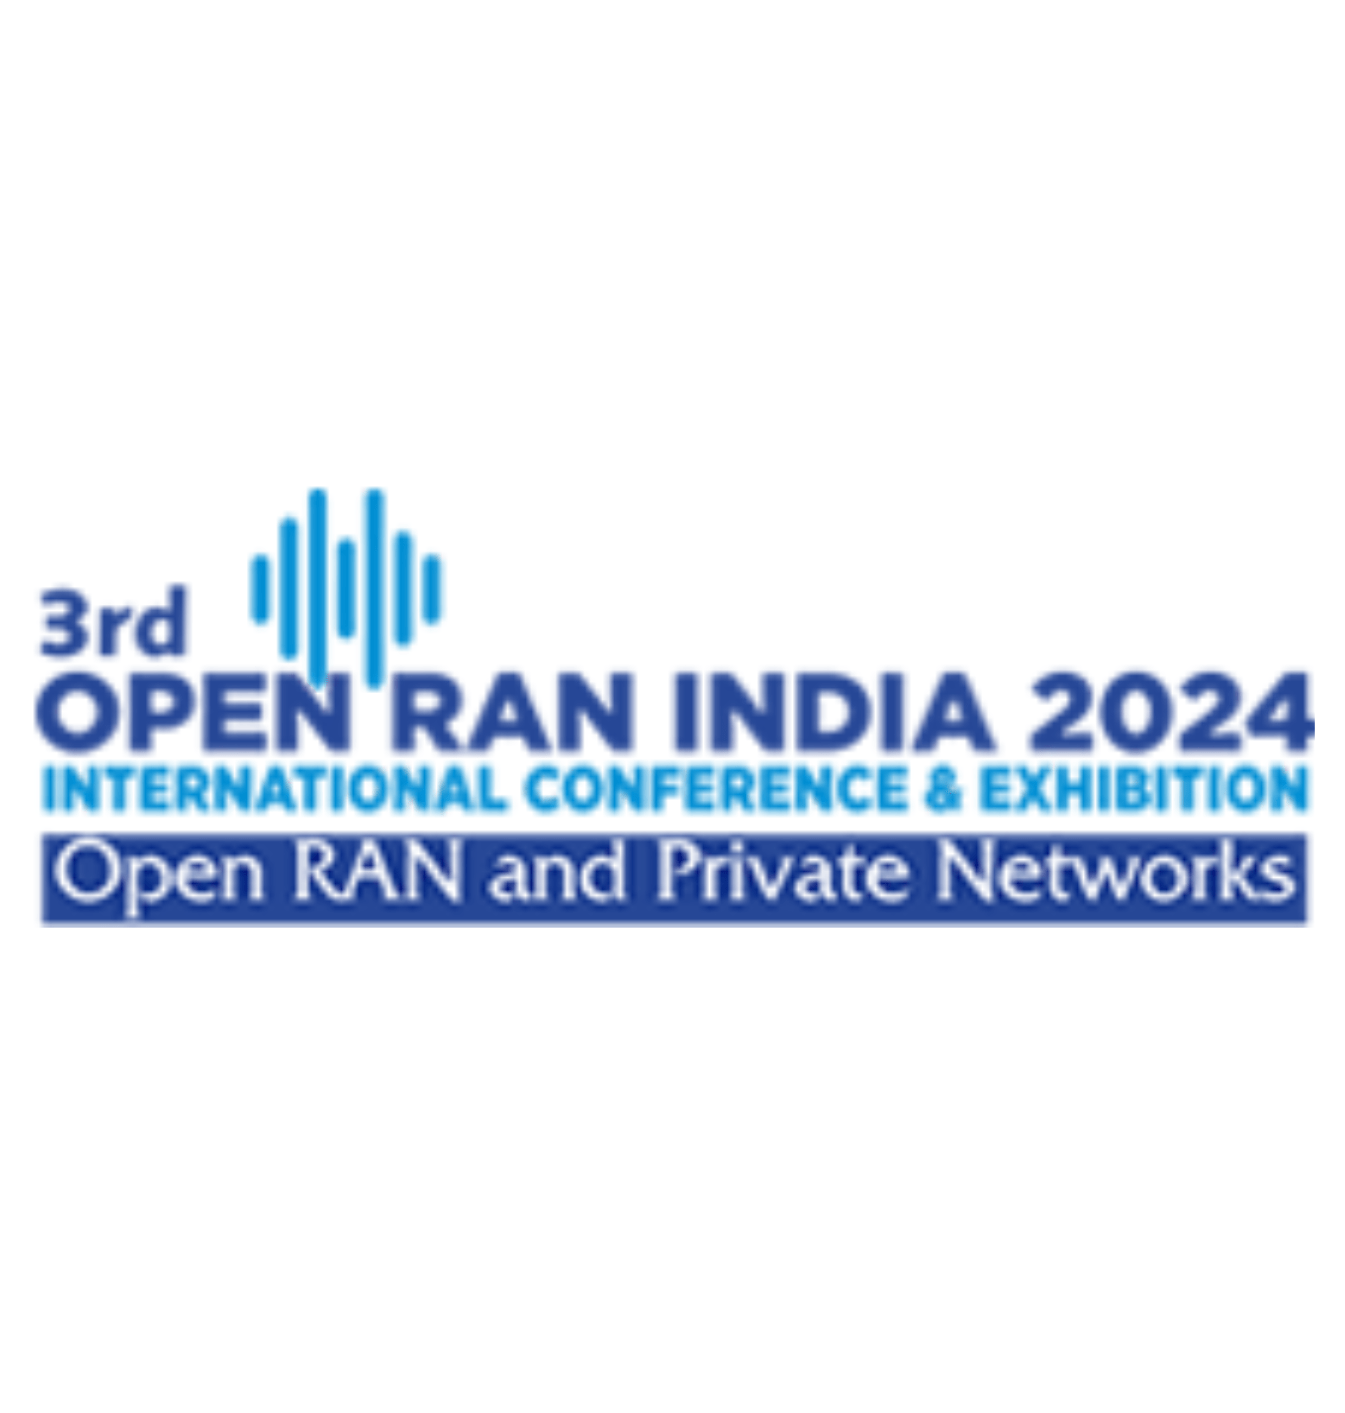 3rd Open RAN India 2024